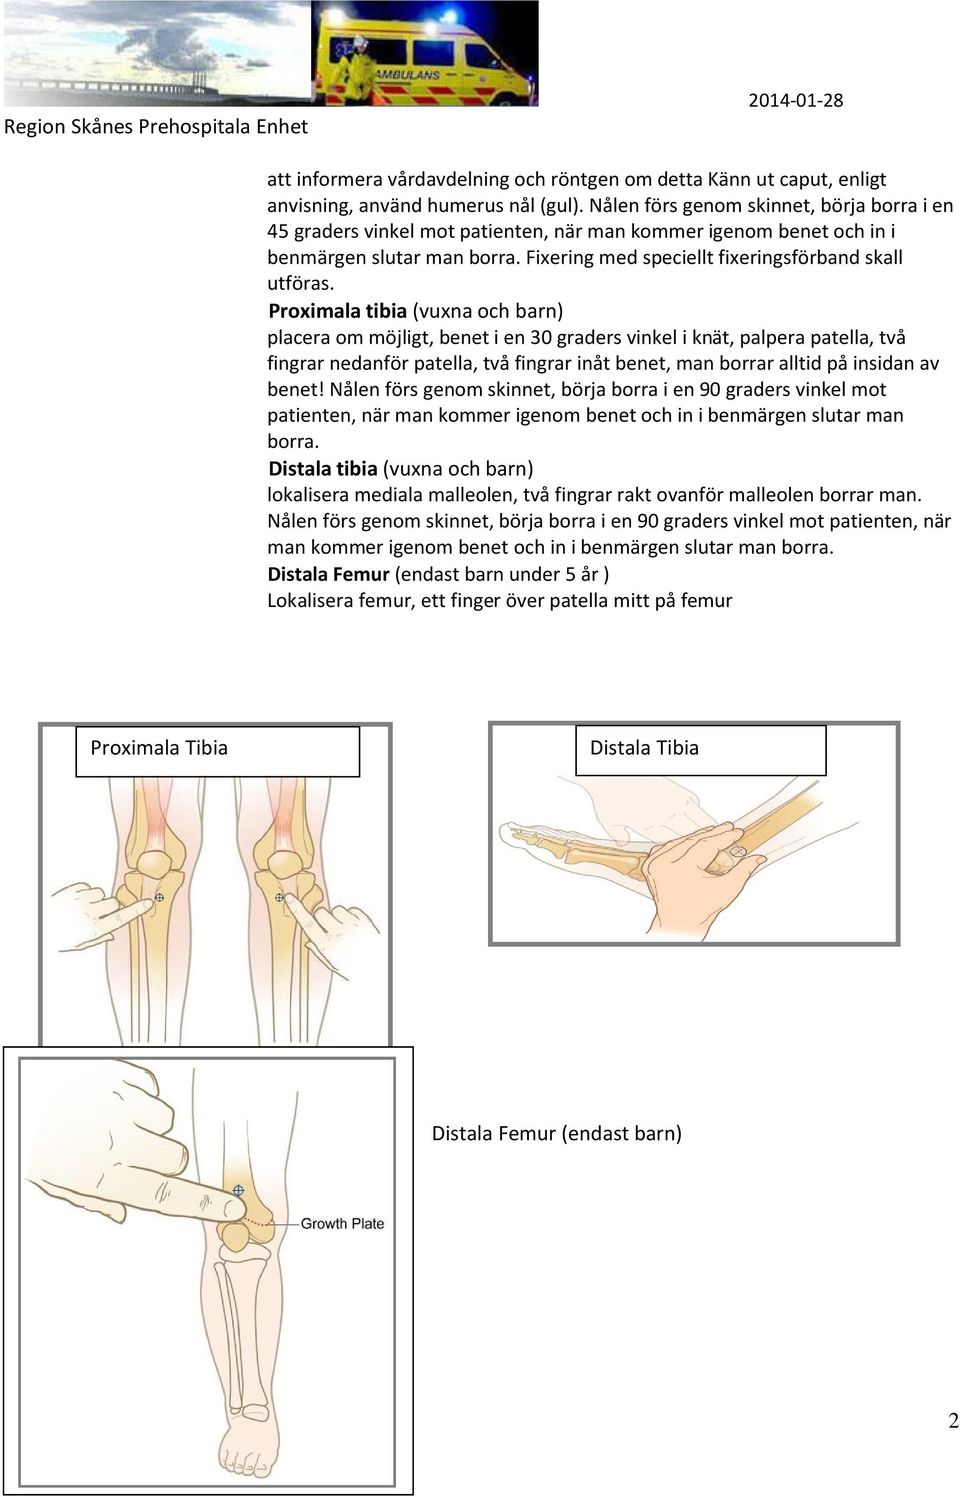 Proximala tibia (vuxna och barn) placera om möjligt, benet i en 30 graders vinkel i knät, palpera patella, två fingrar nedanför patella, två fingrar inåt benet, man borrar alltid på insidan av benet!